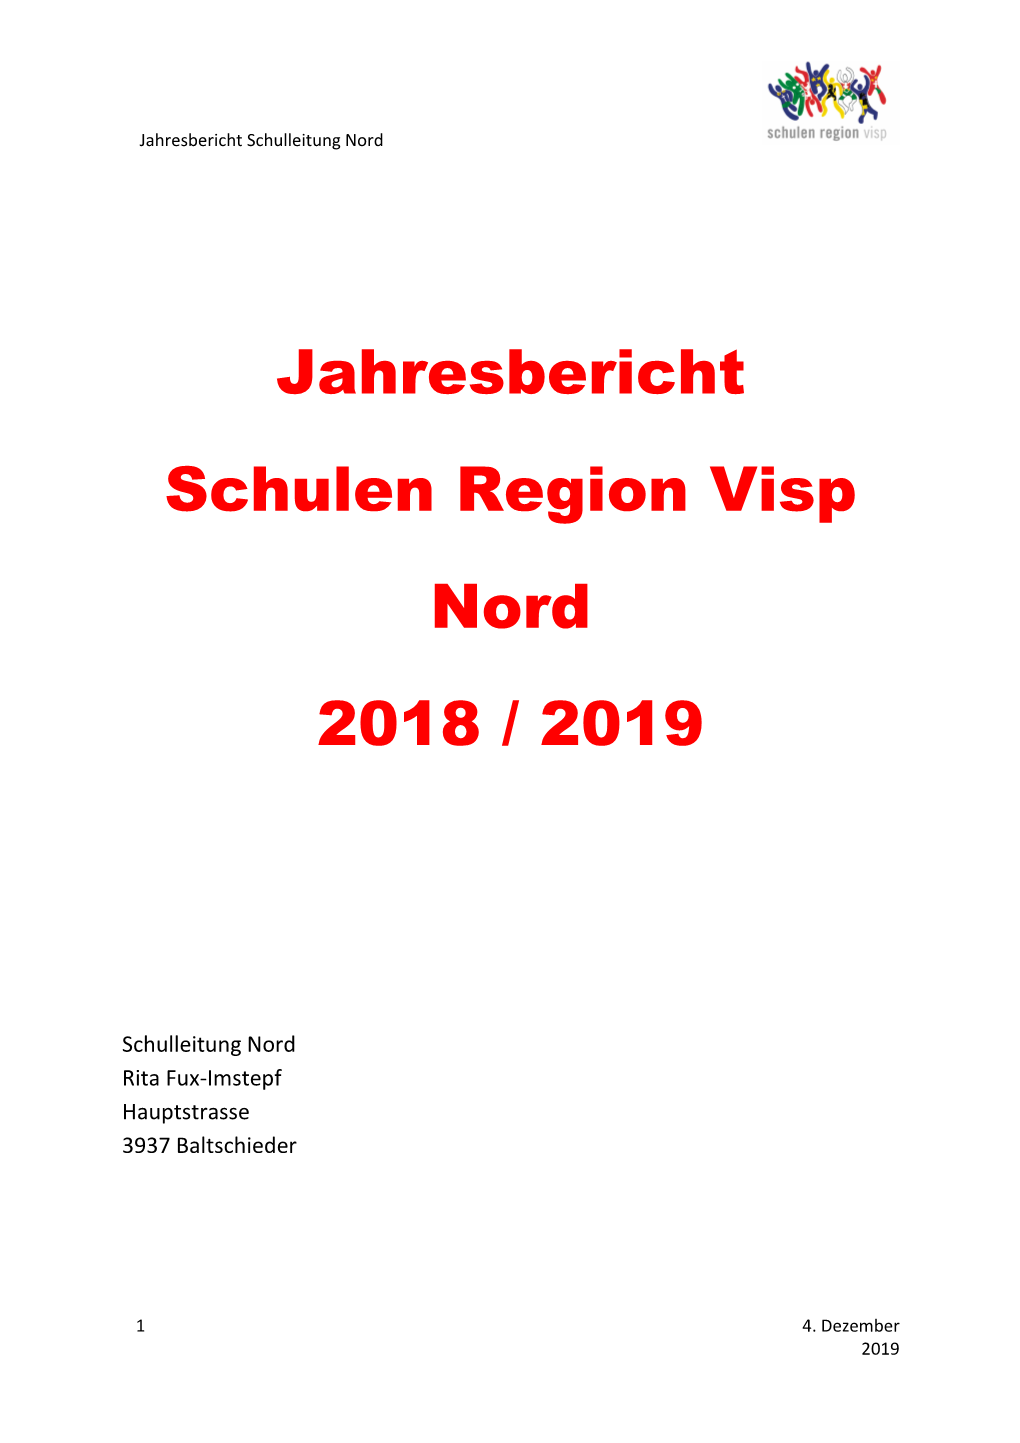 Jahresbericht Schulen Region Visp Nord 2018 / 2019